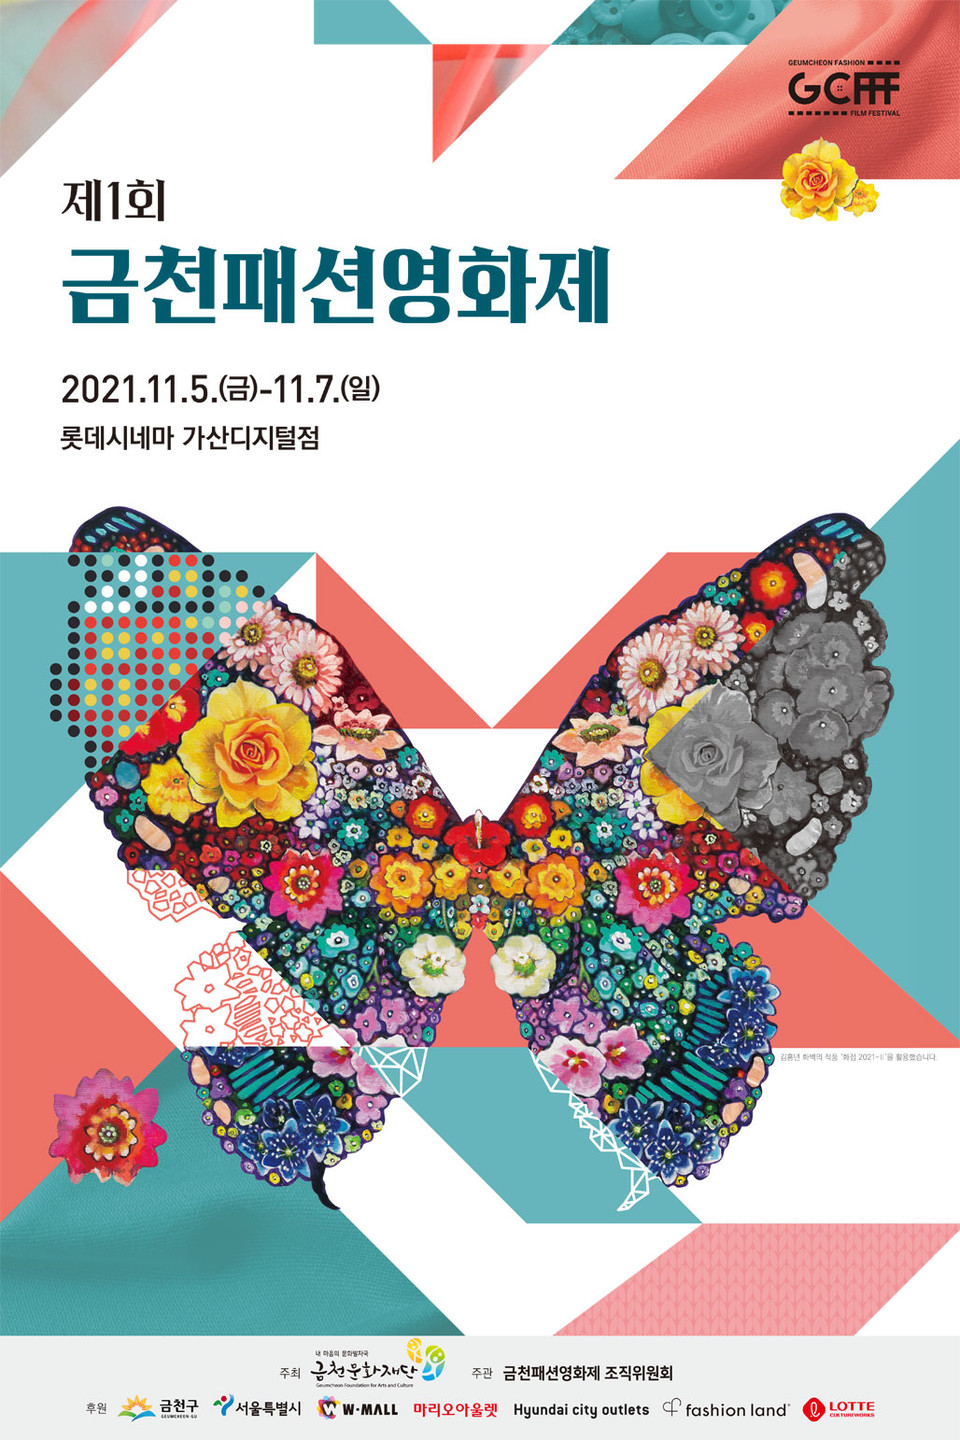 11월 5일(금)부터 7일(일)까지 개최되는 제1회 금천패션영화제 포스터 ©열린뉴스통신